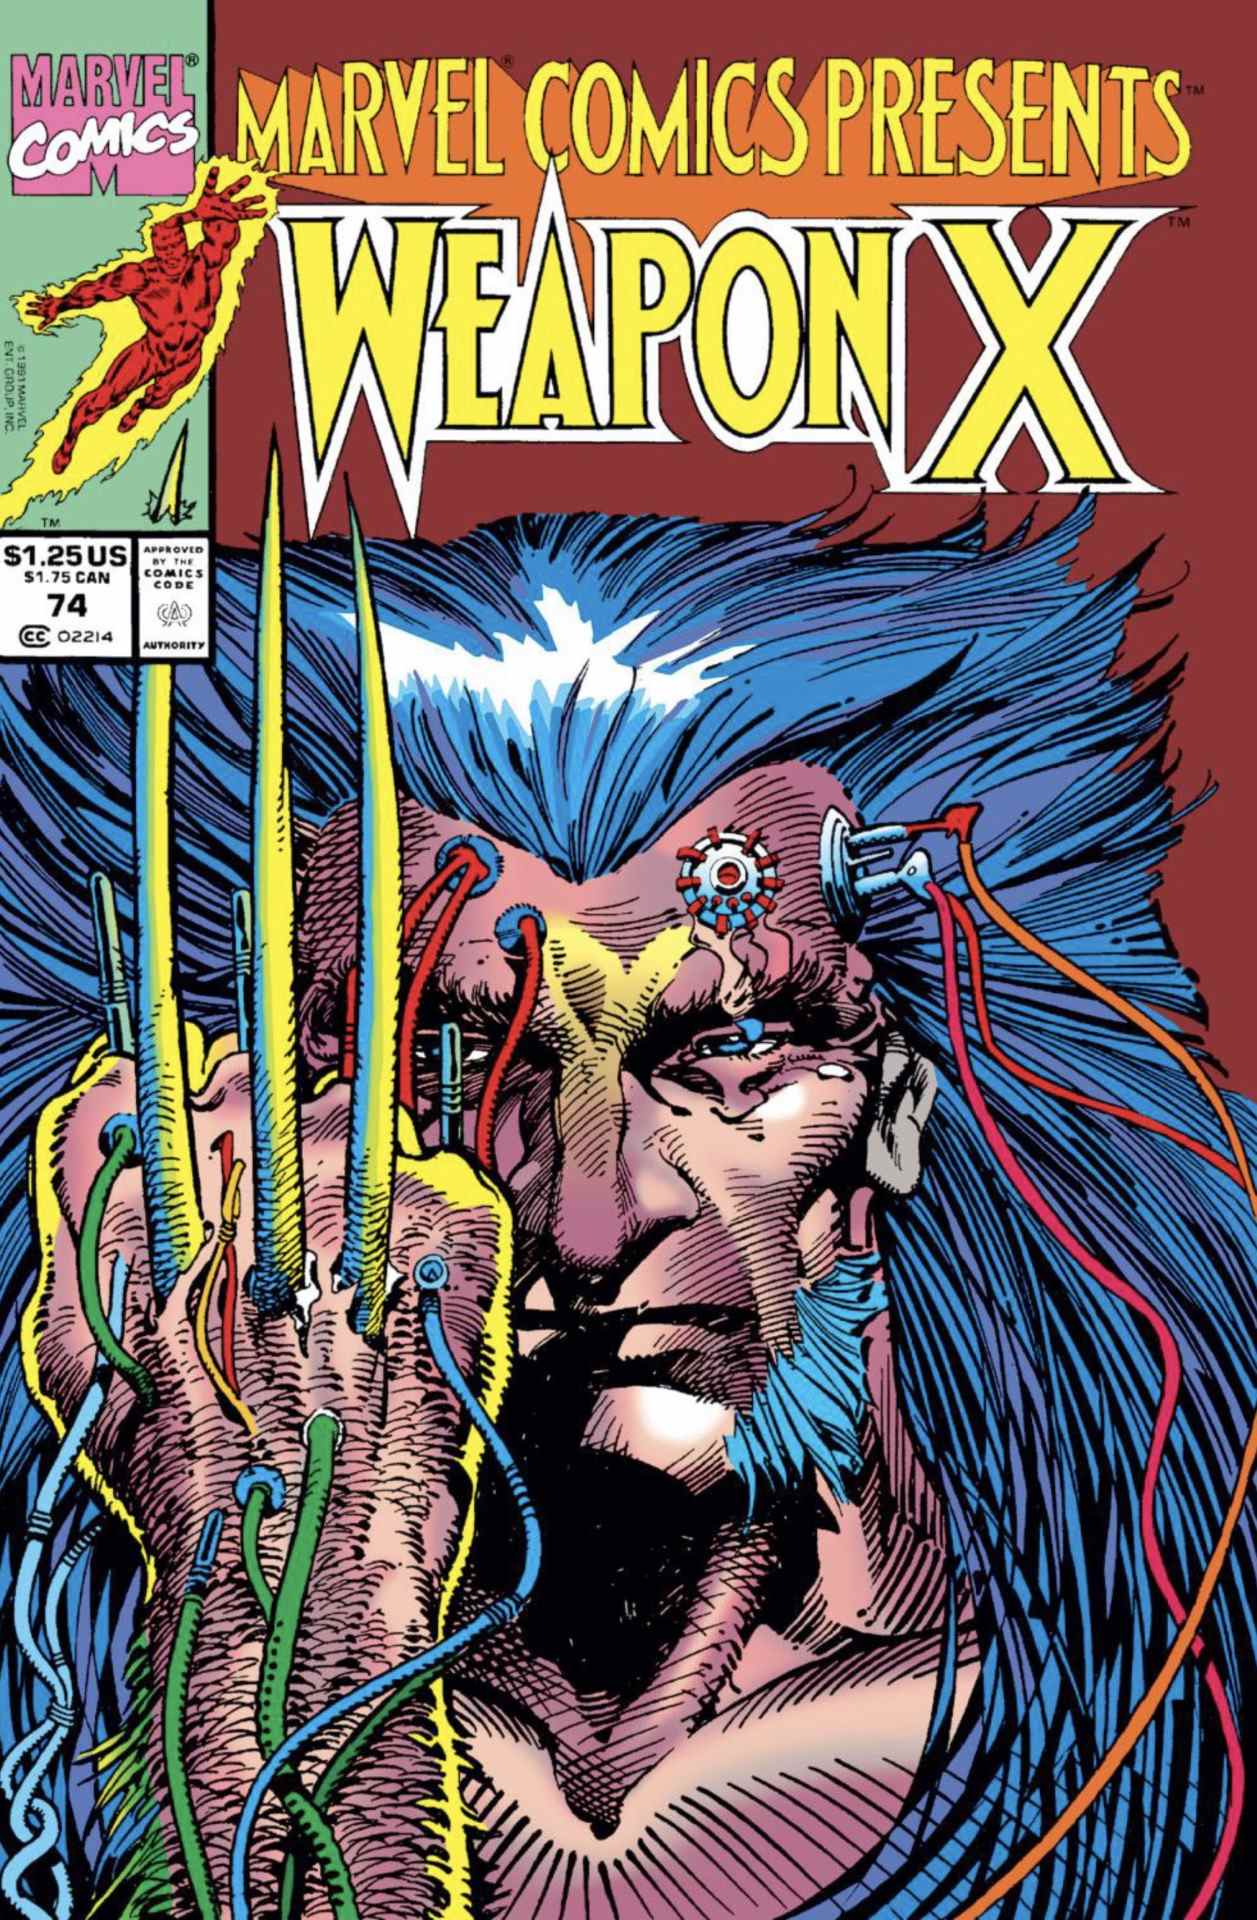 Marvel Comics présente la couverture #74